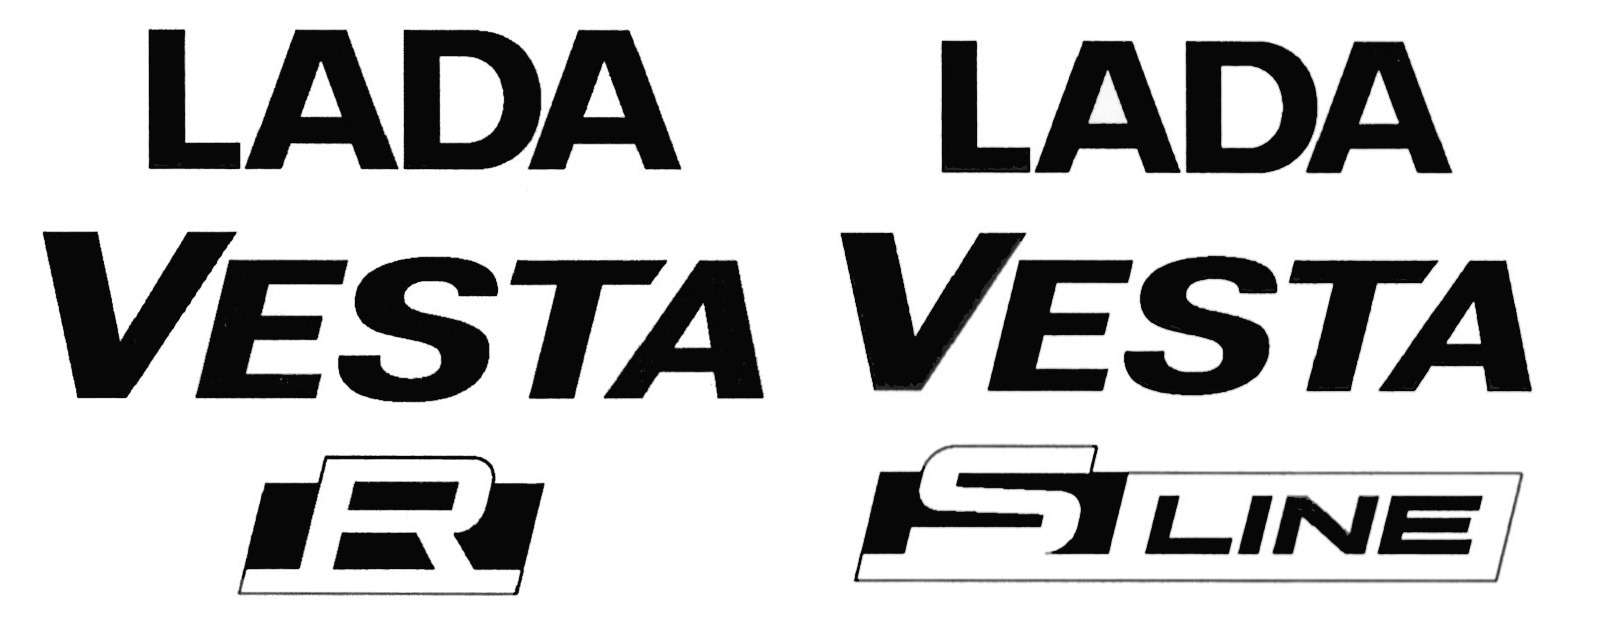 Спортивная Lada Vesta получит интерьер от концепта — фото 831539